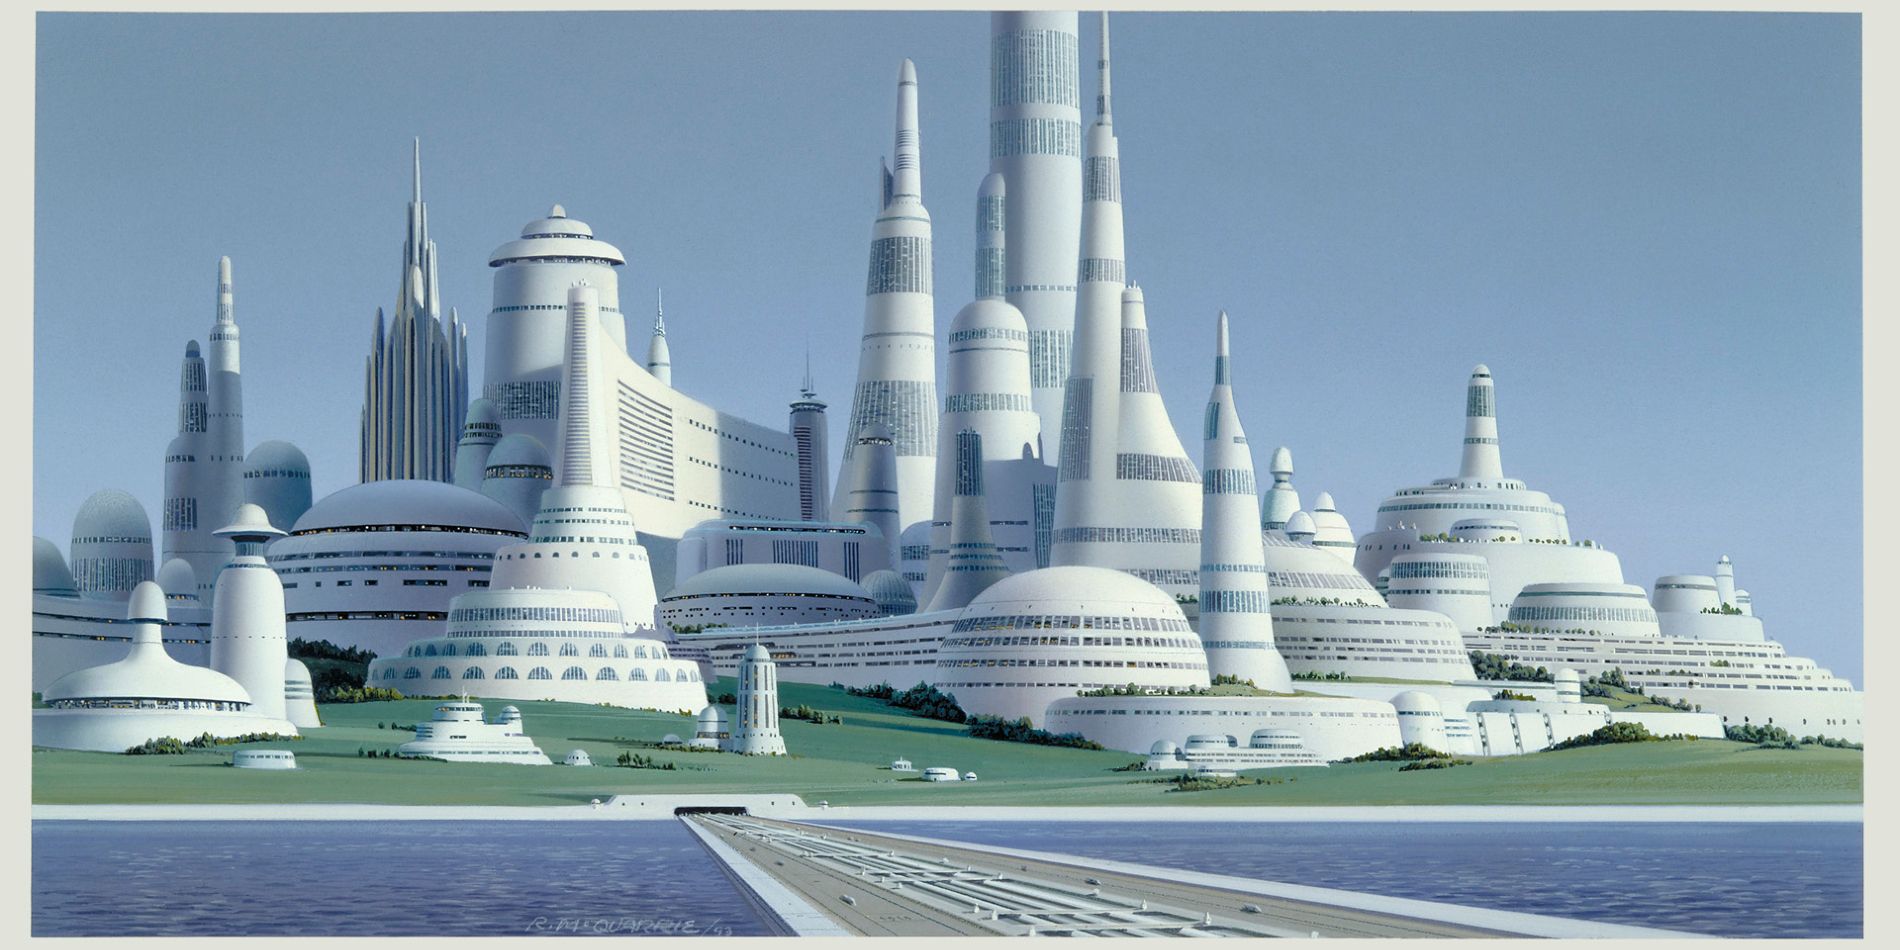 Ralph McQuarrie's Star Wars Concept Art of Alderaan's capital city